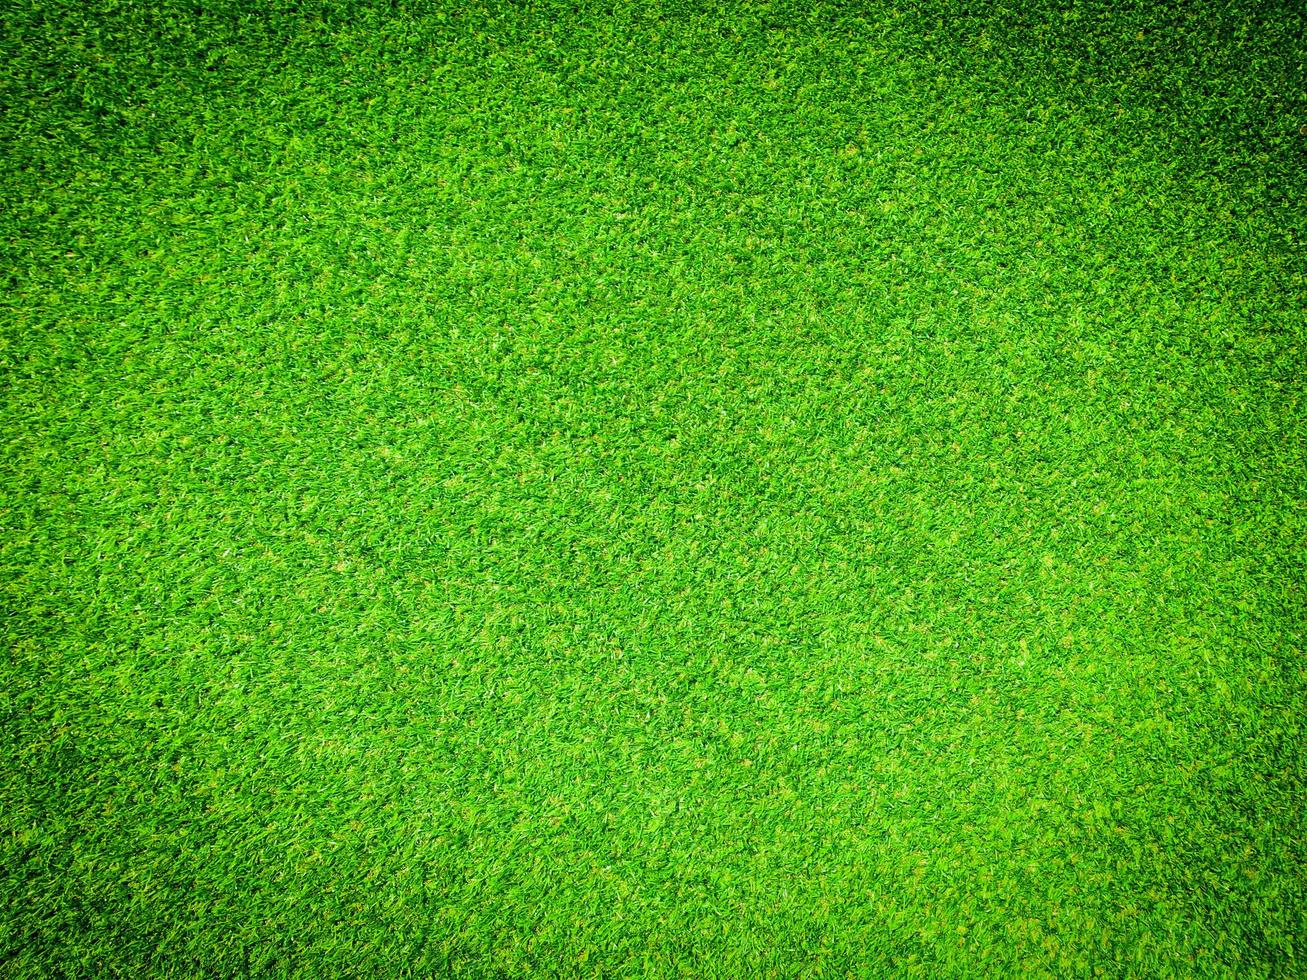 beau motif d'herbe verte du terrain de golf pour le fond. espace de copie pour le travail et la conception, vue de dessus photo